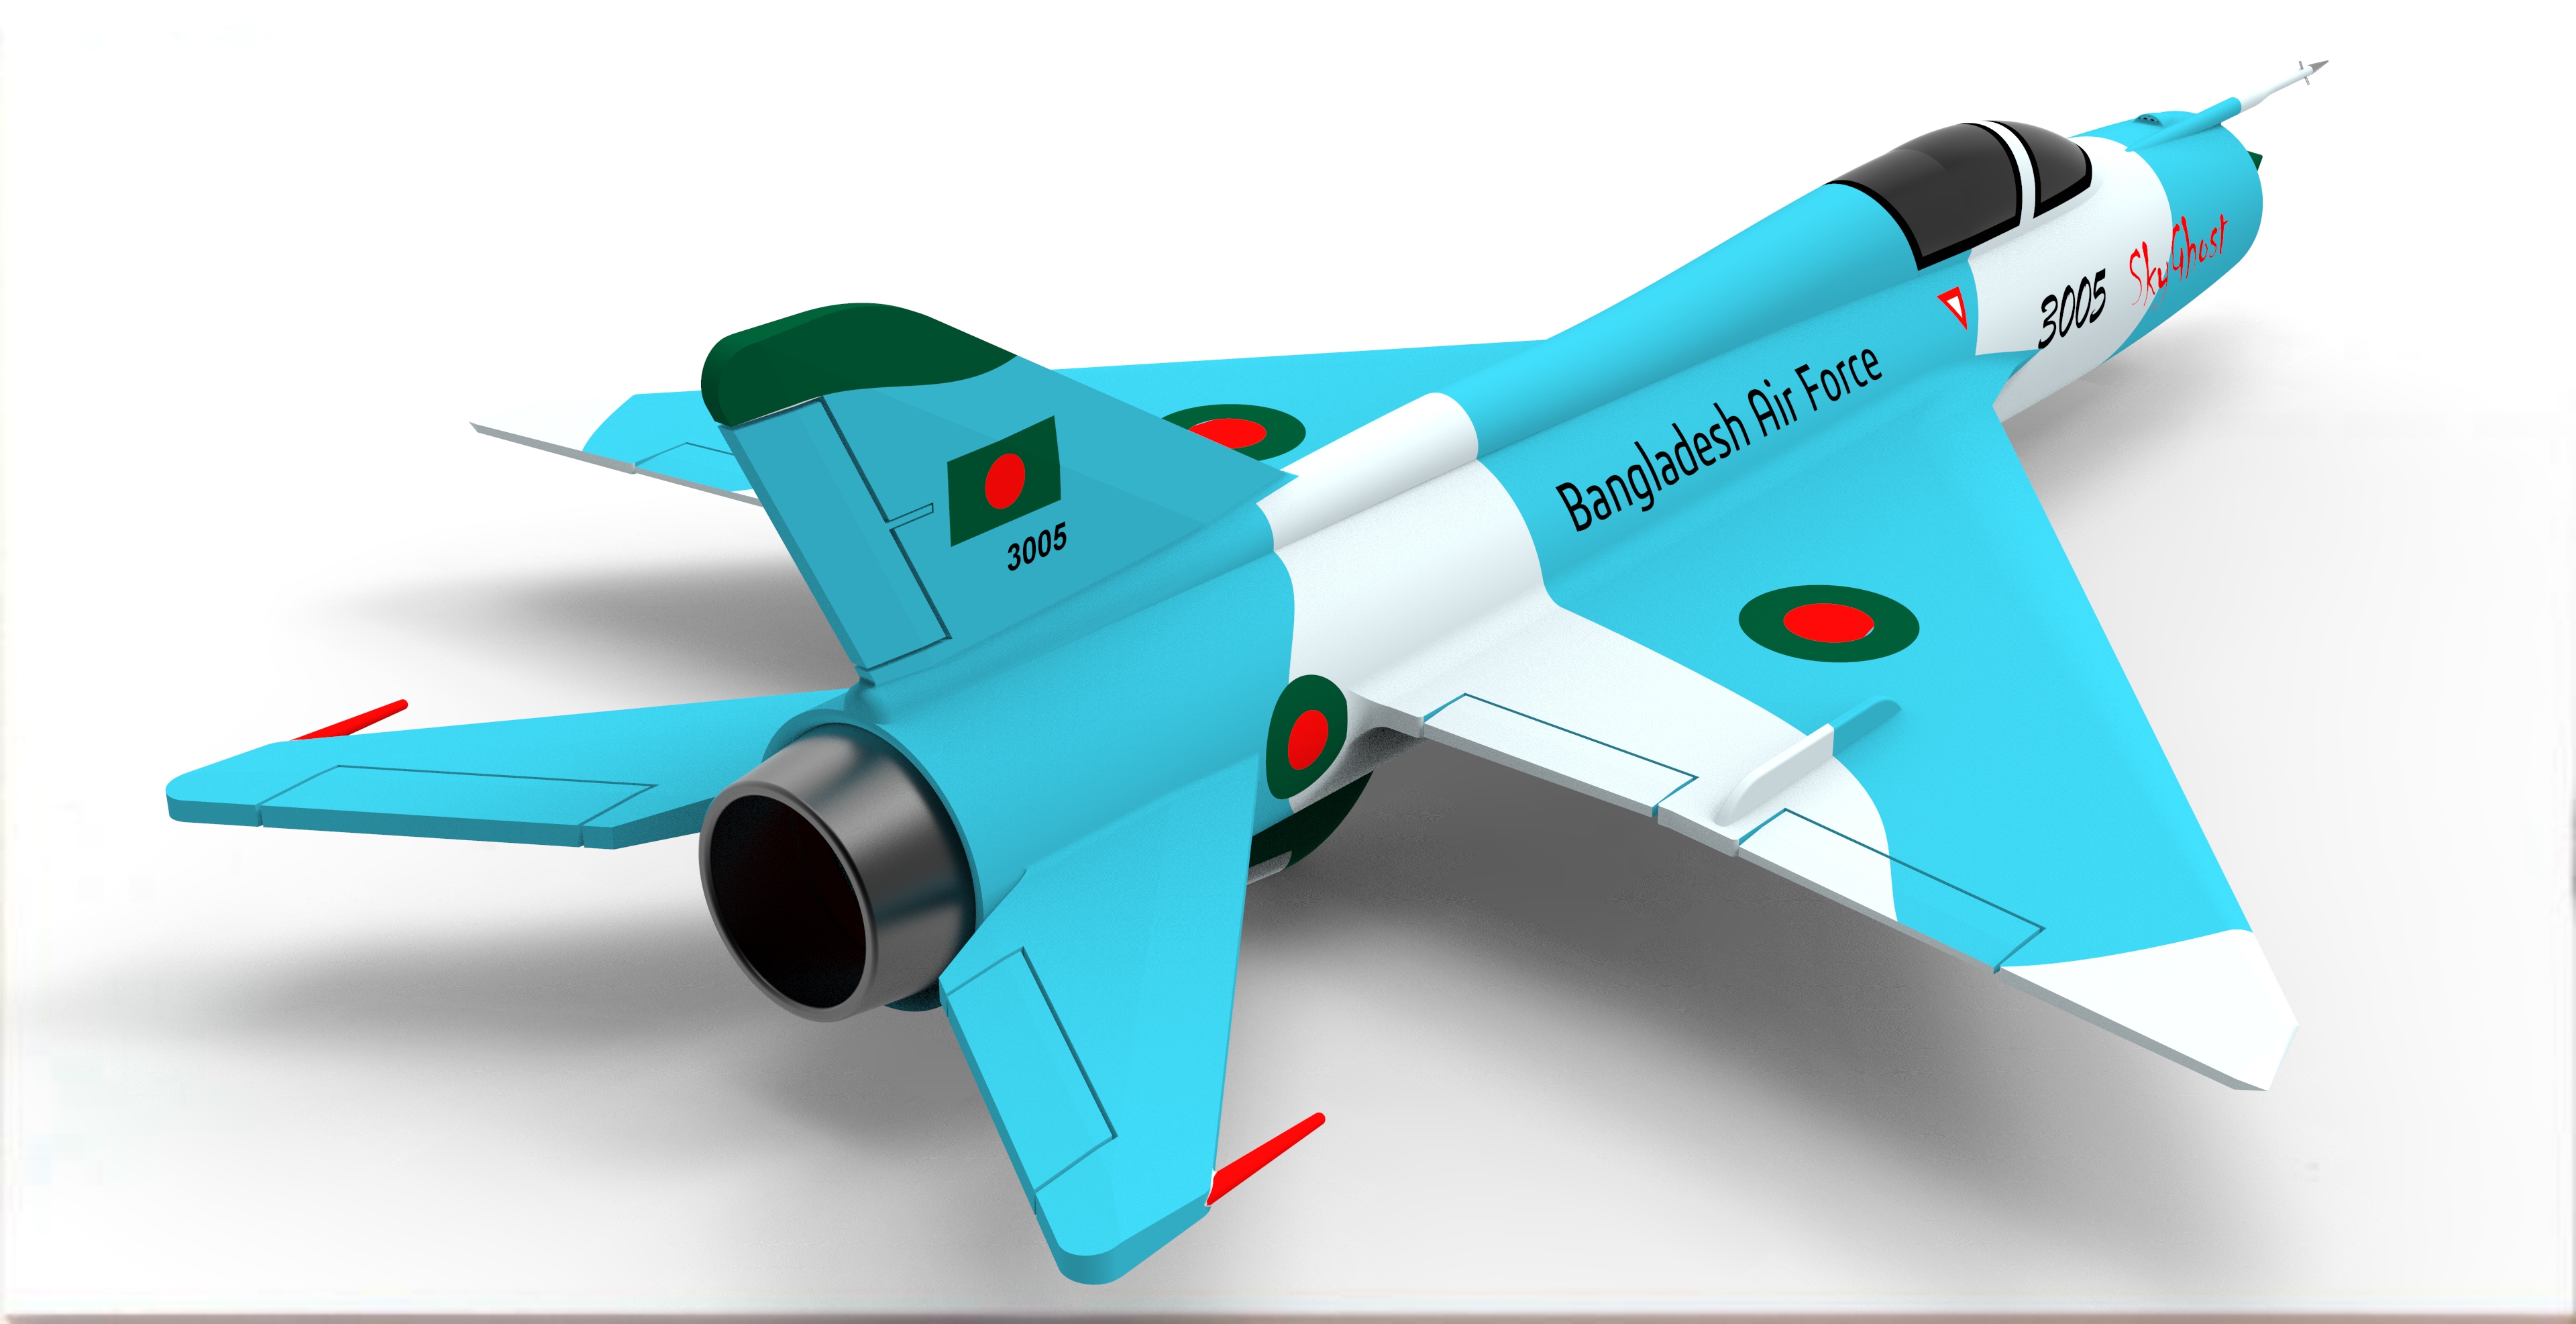 米格21飞机 mig-21简易模型